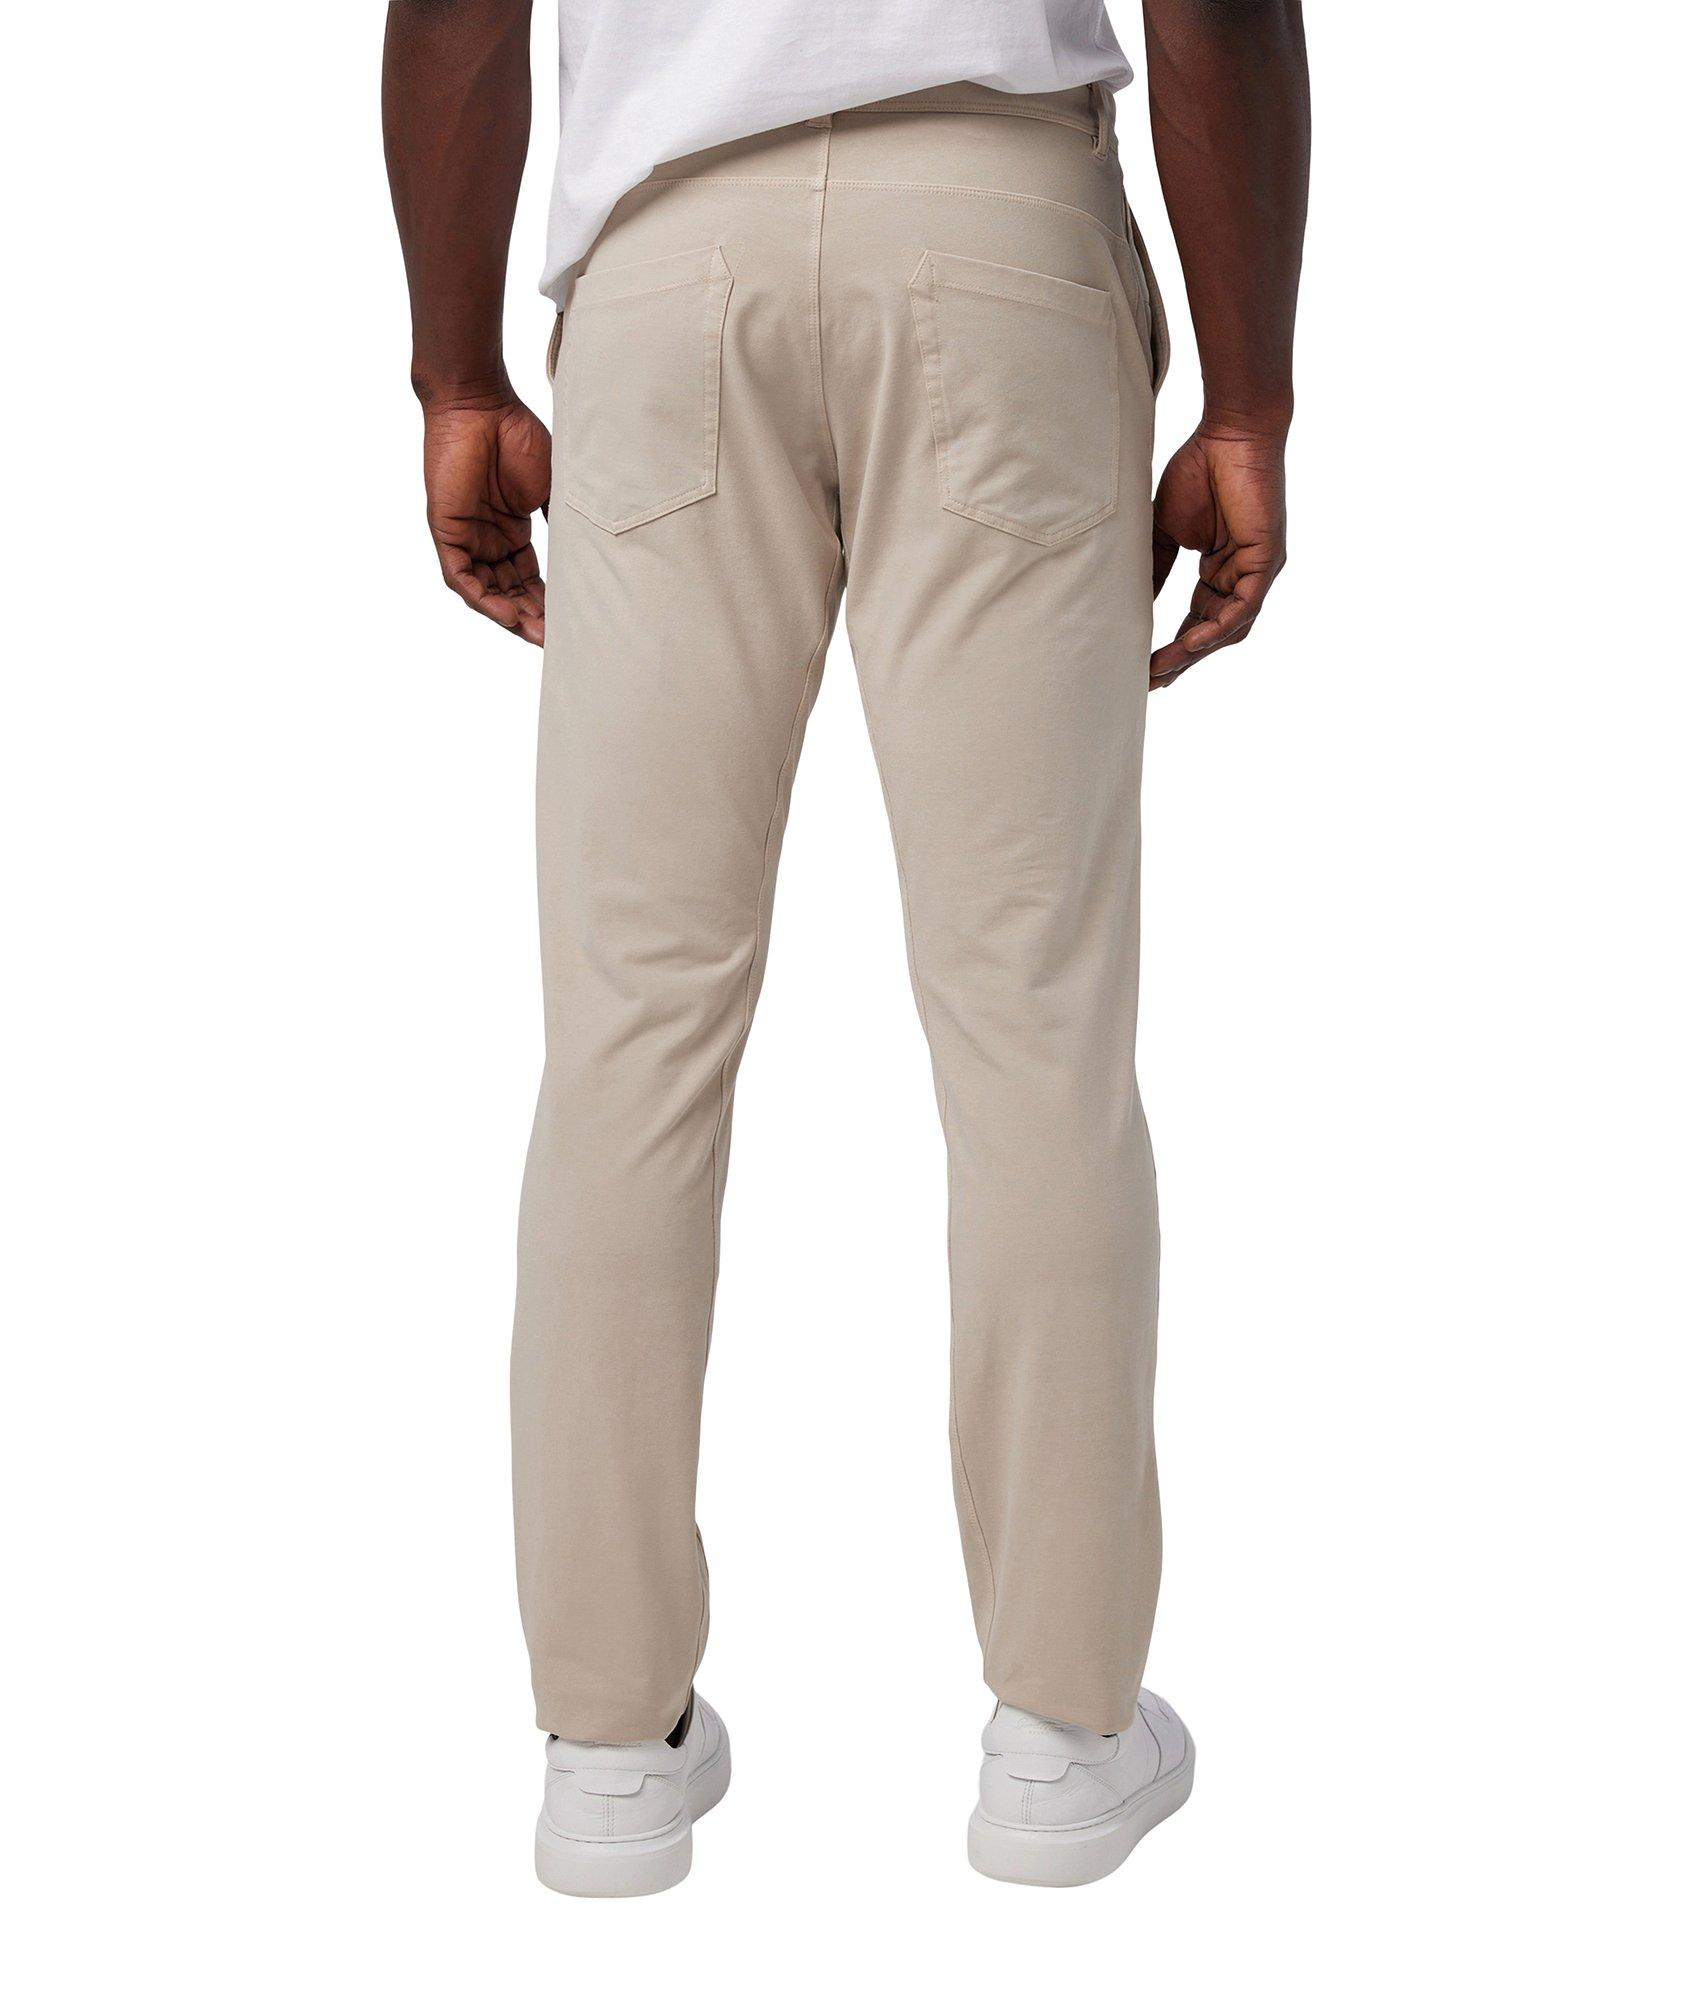 Flex Pro Jersey Hybrid Five-Pocket Pants image 2